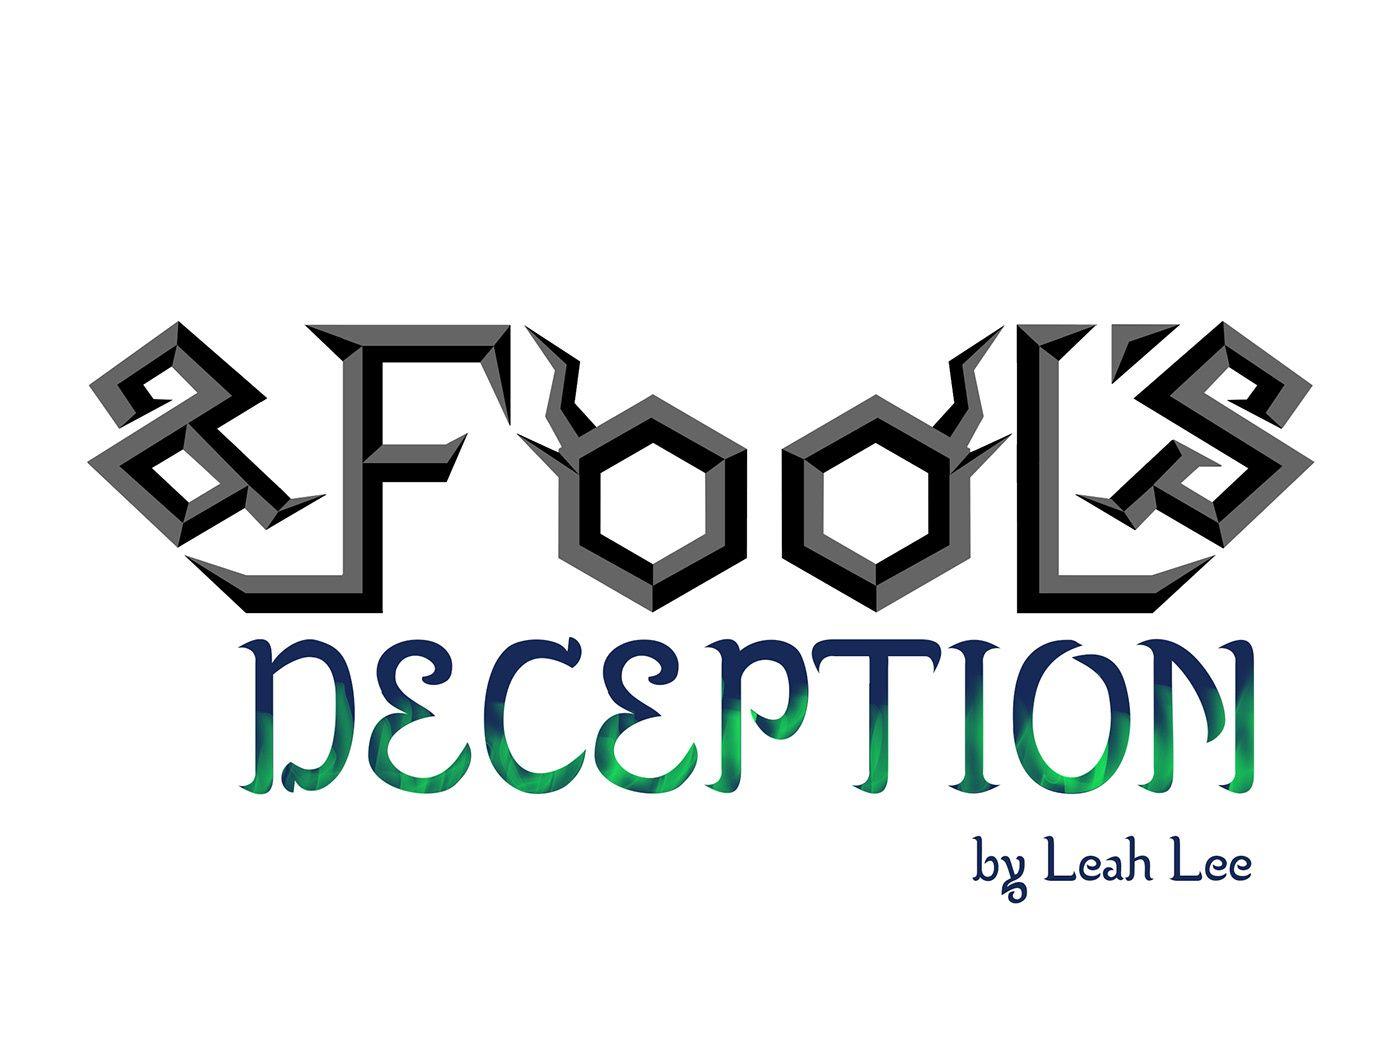 Deception Logo - A Fool's Deception